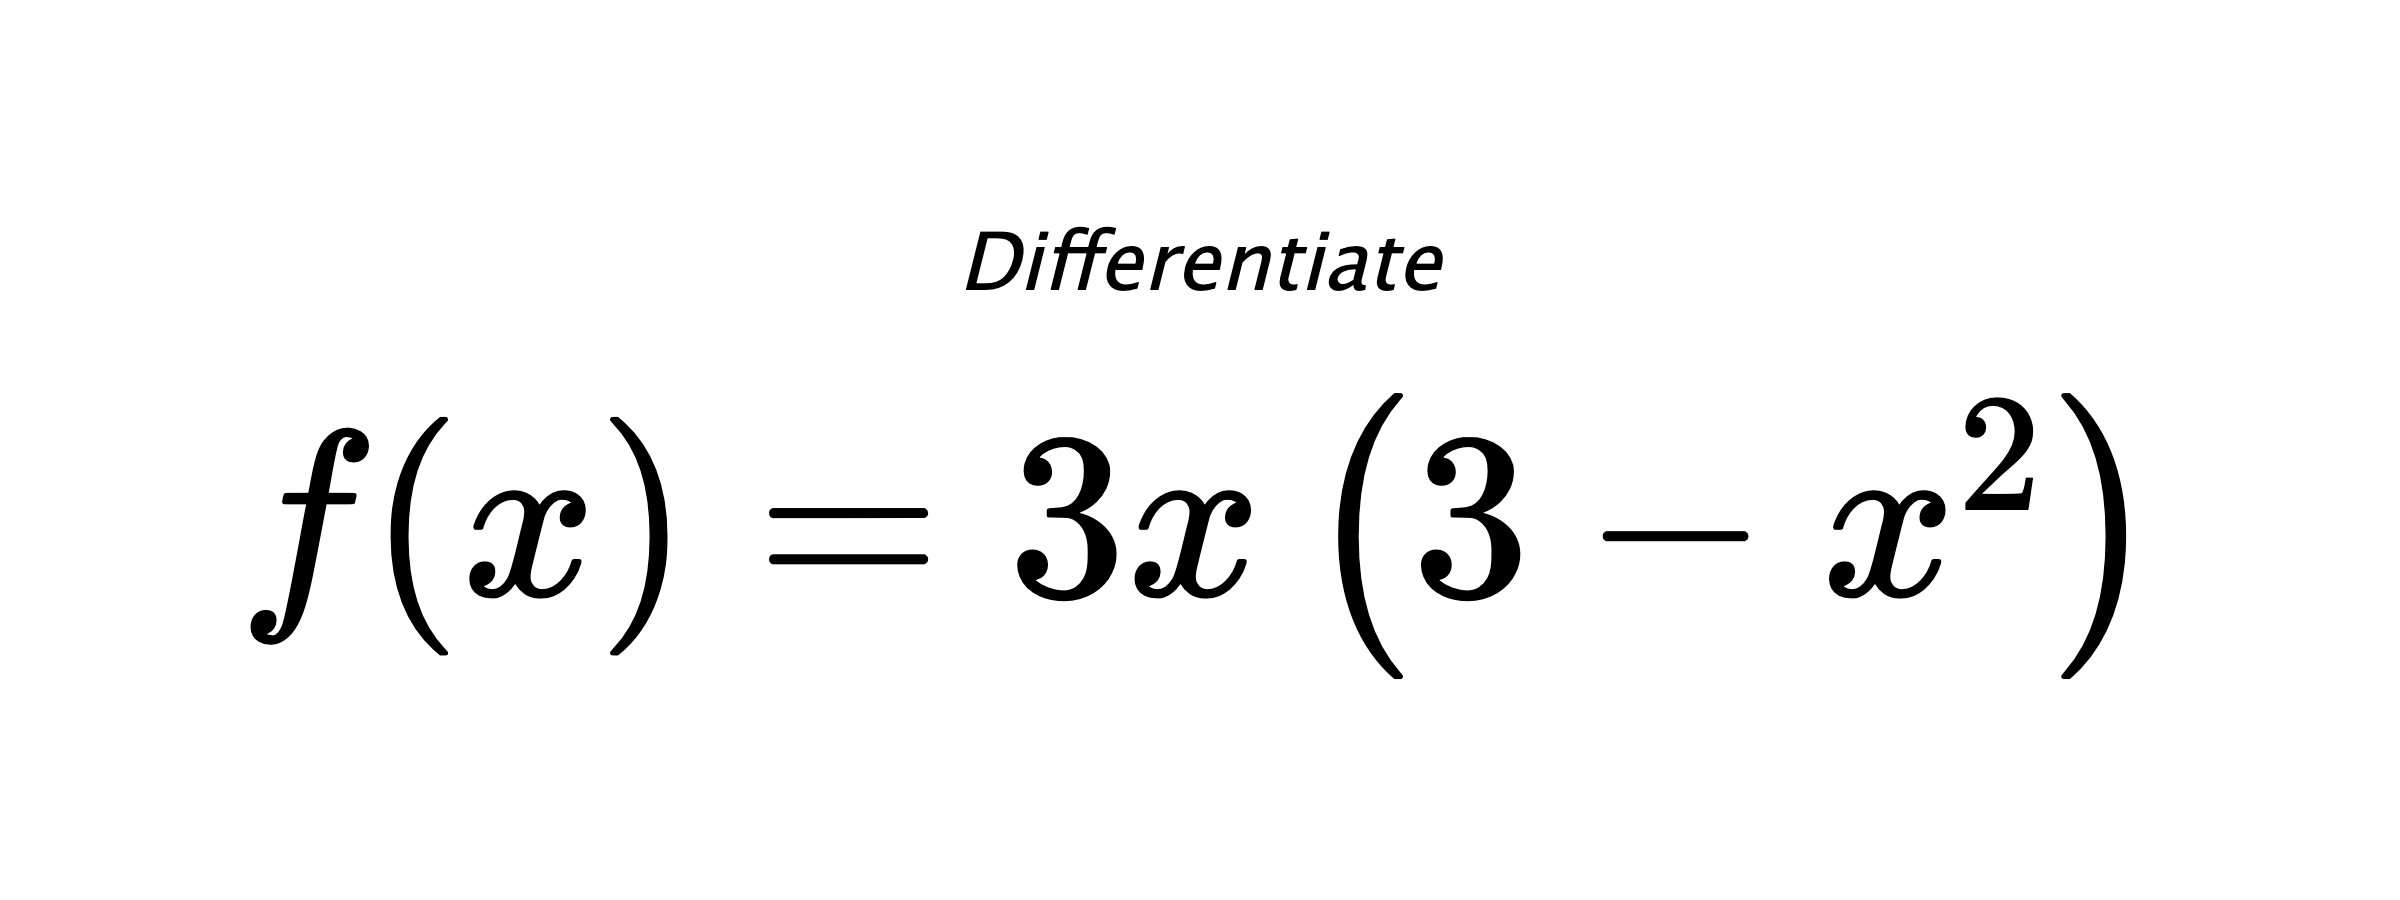 Differentiate $ f(x) = 3 x \left(3 - x^{2}\right) $